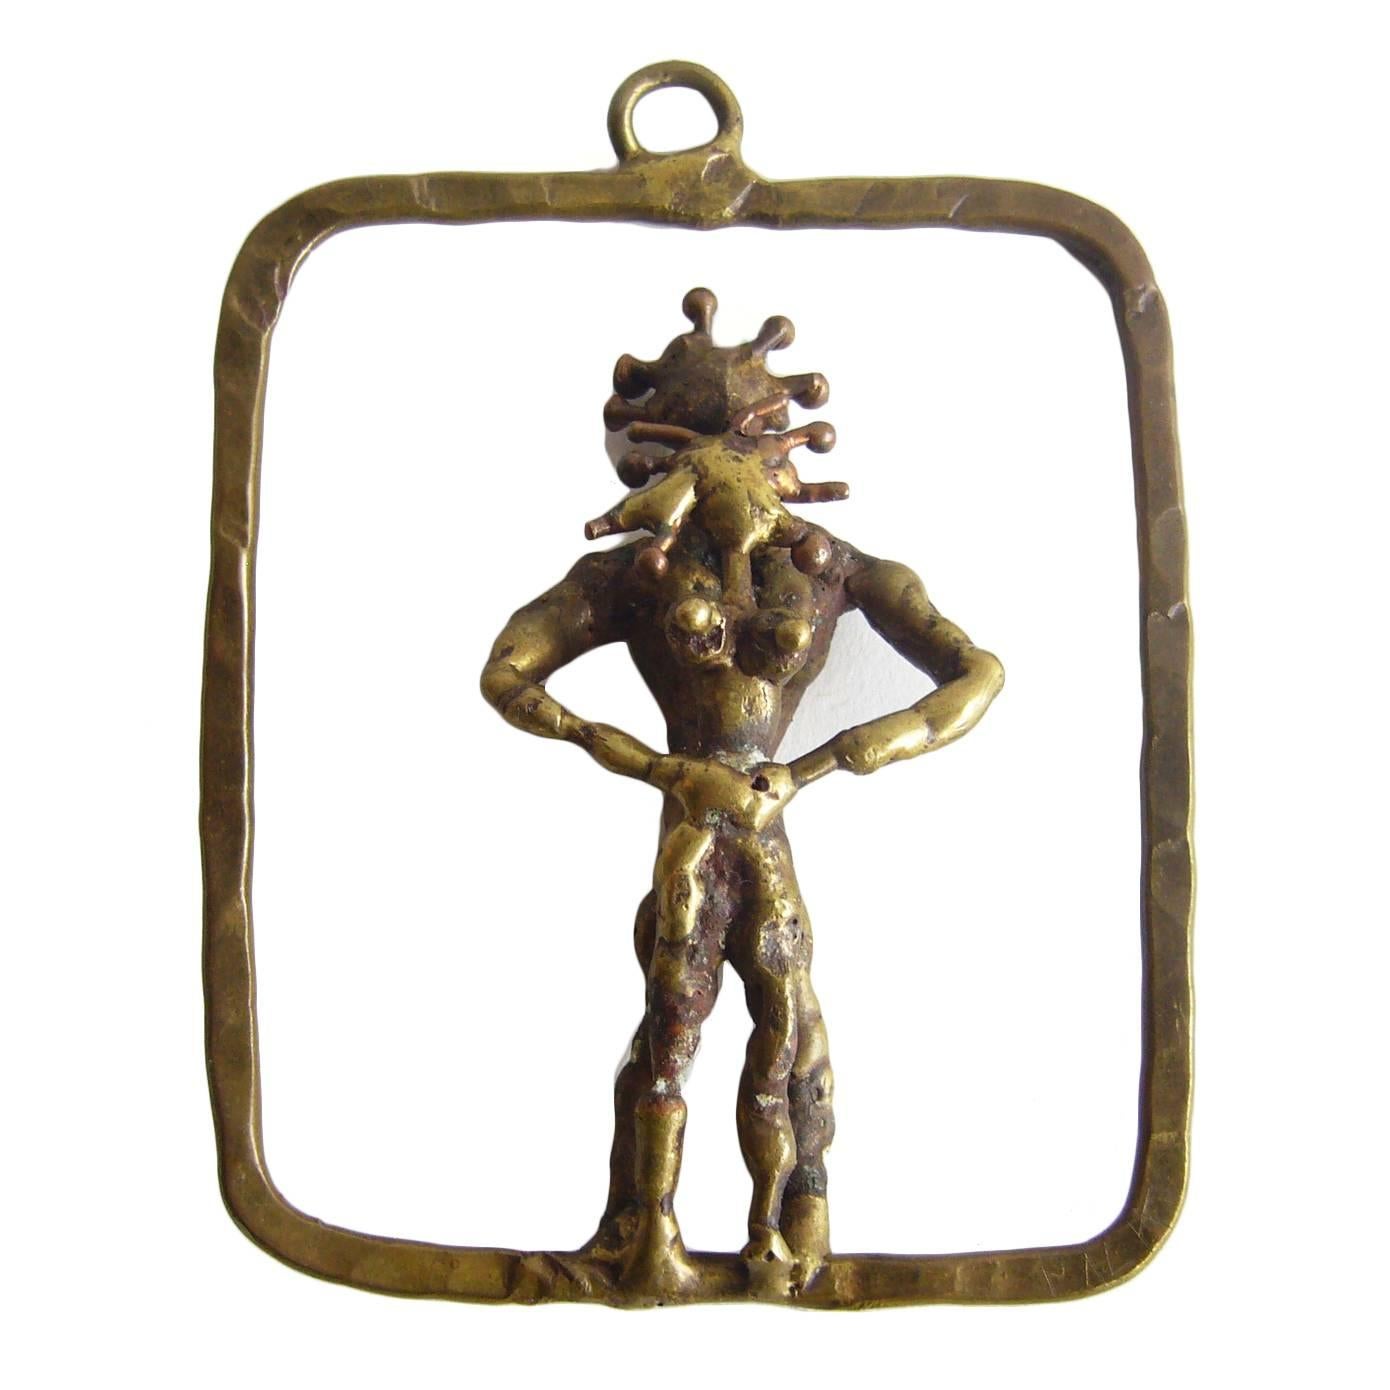 Pal Kepenyes Bronze Erotic Figural Pendant Necklace